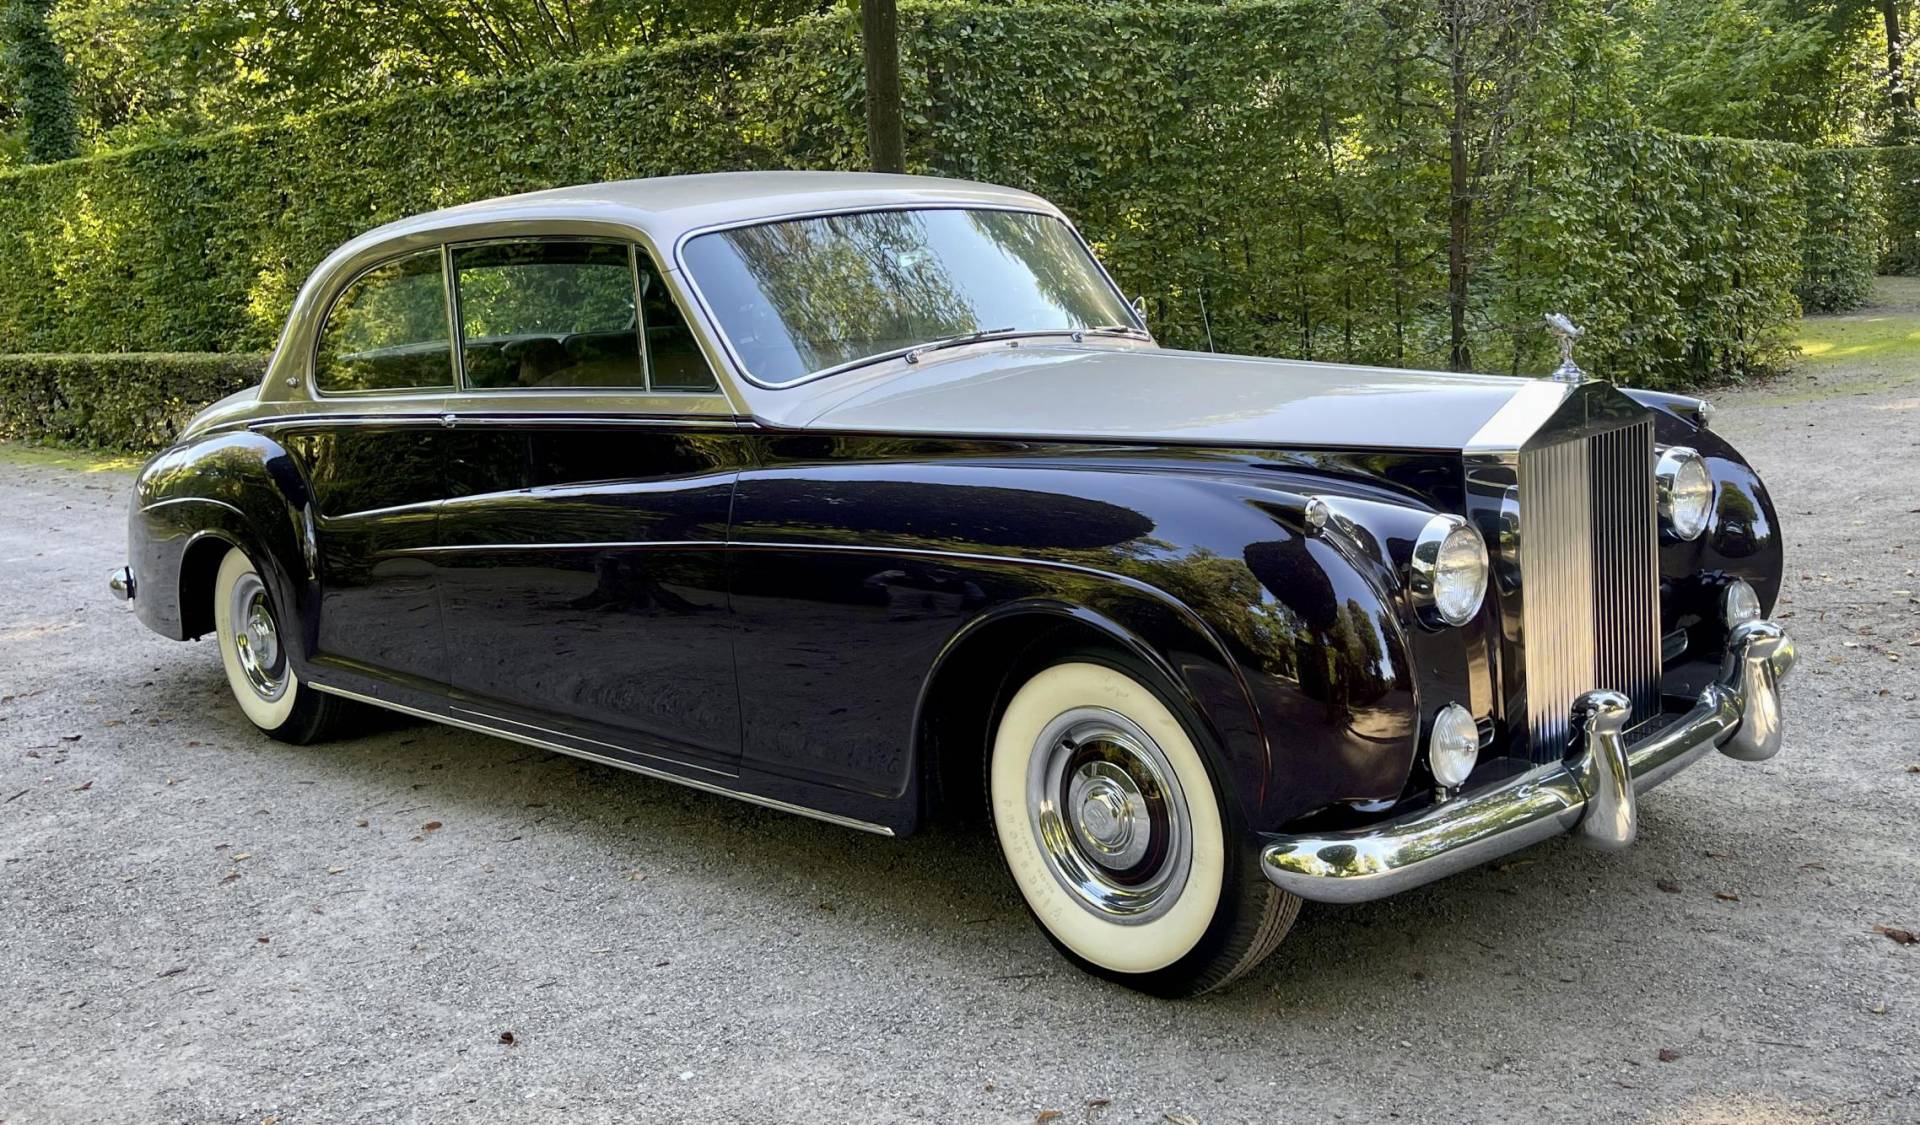 For Sale RollsRoyce Phantom V 1963 offered for 130000